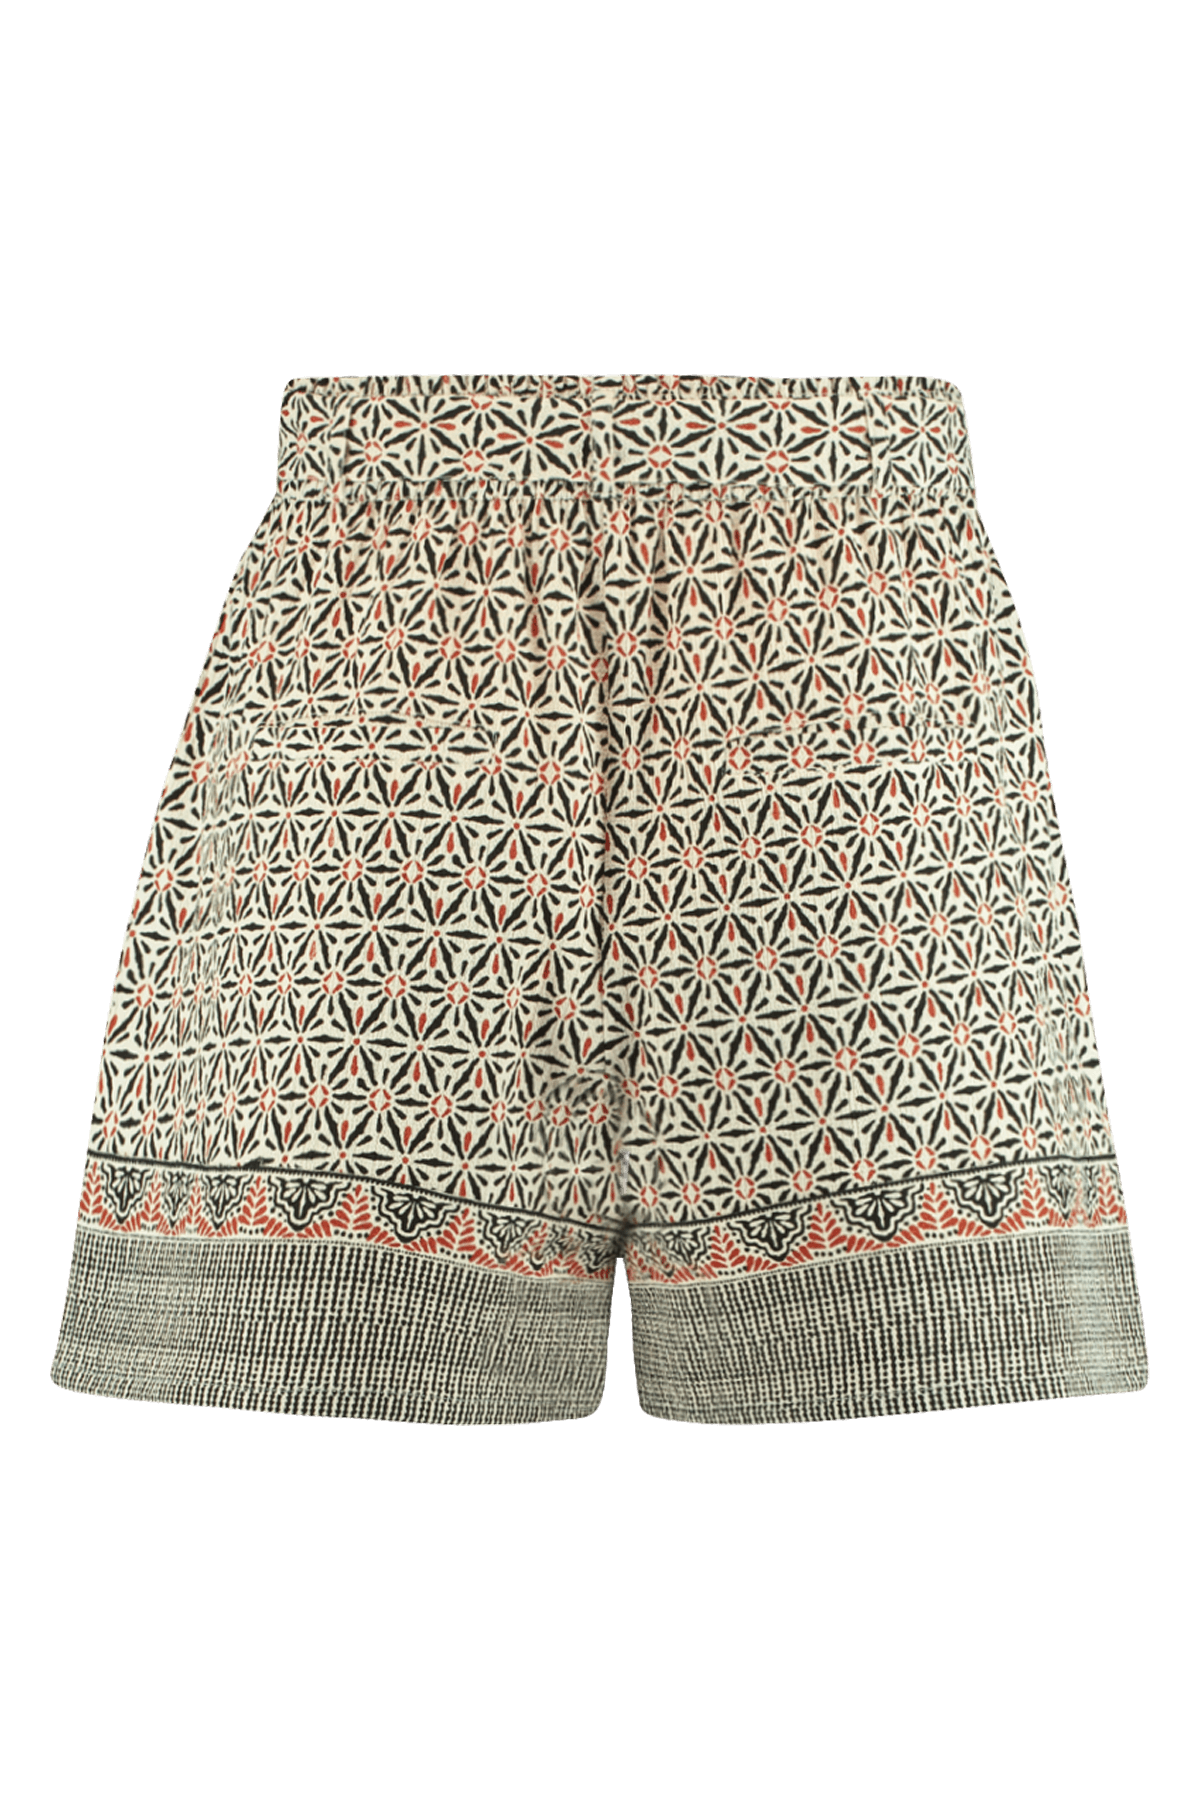 Shorts con cinturón  image 2